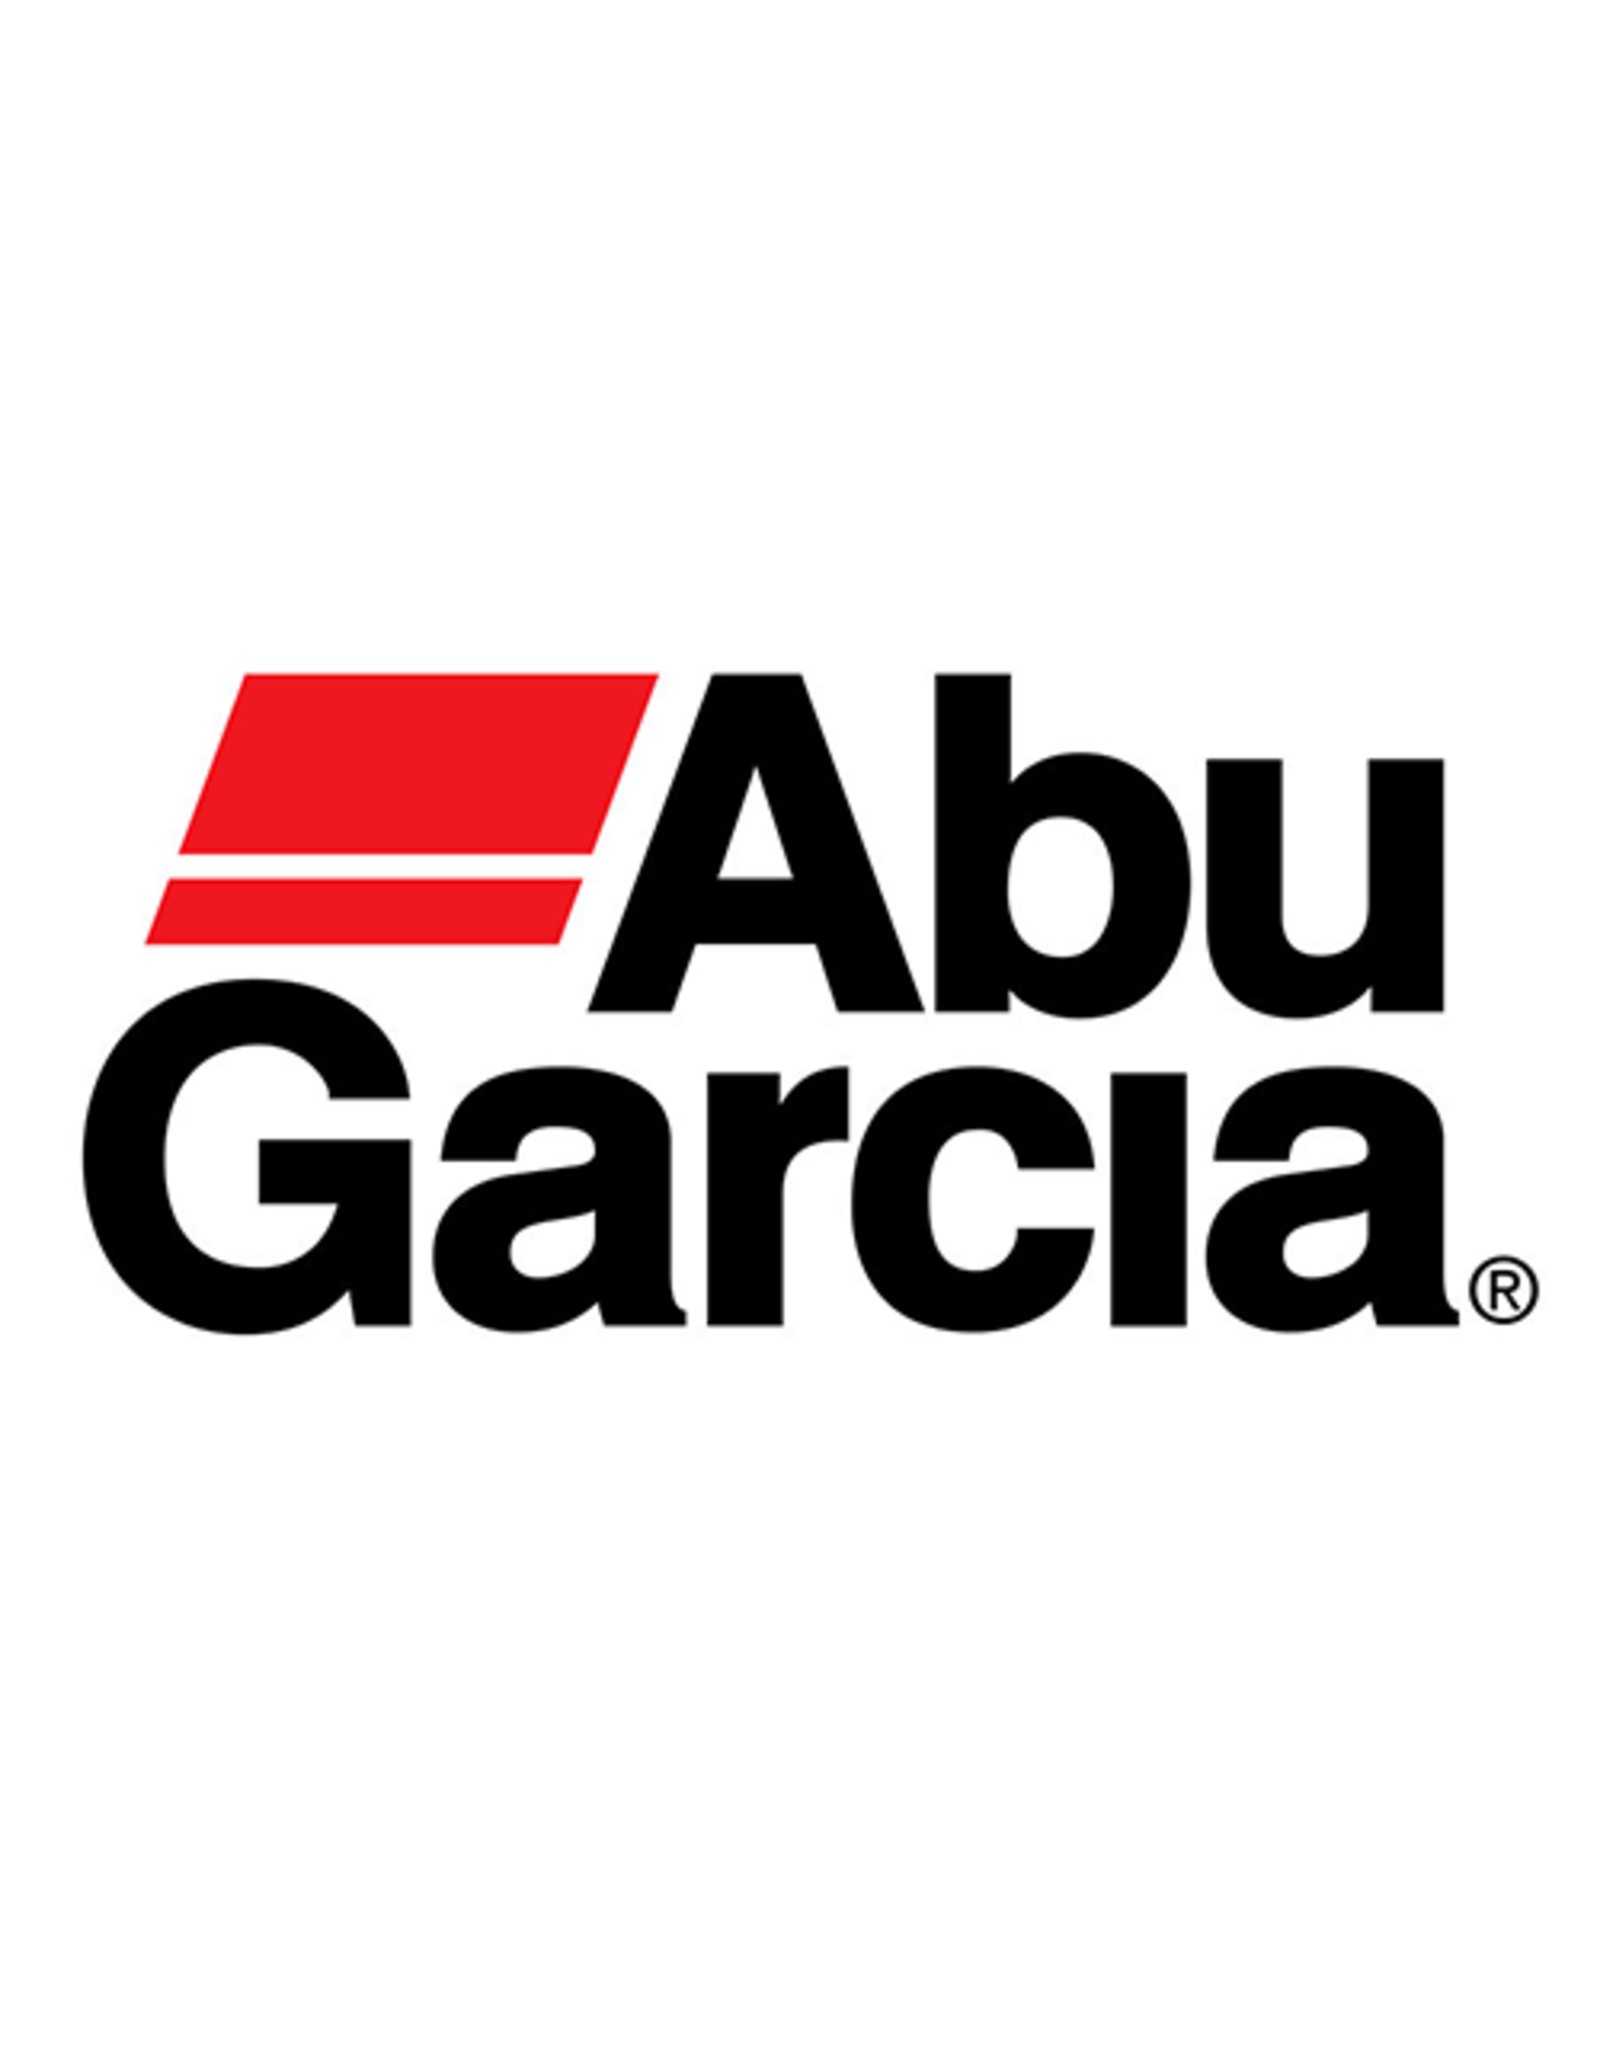 Abu Garcia 1378785 LINE ROLLER